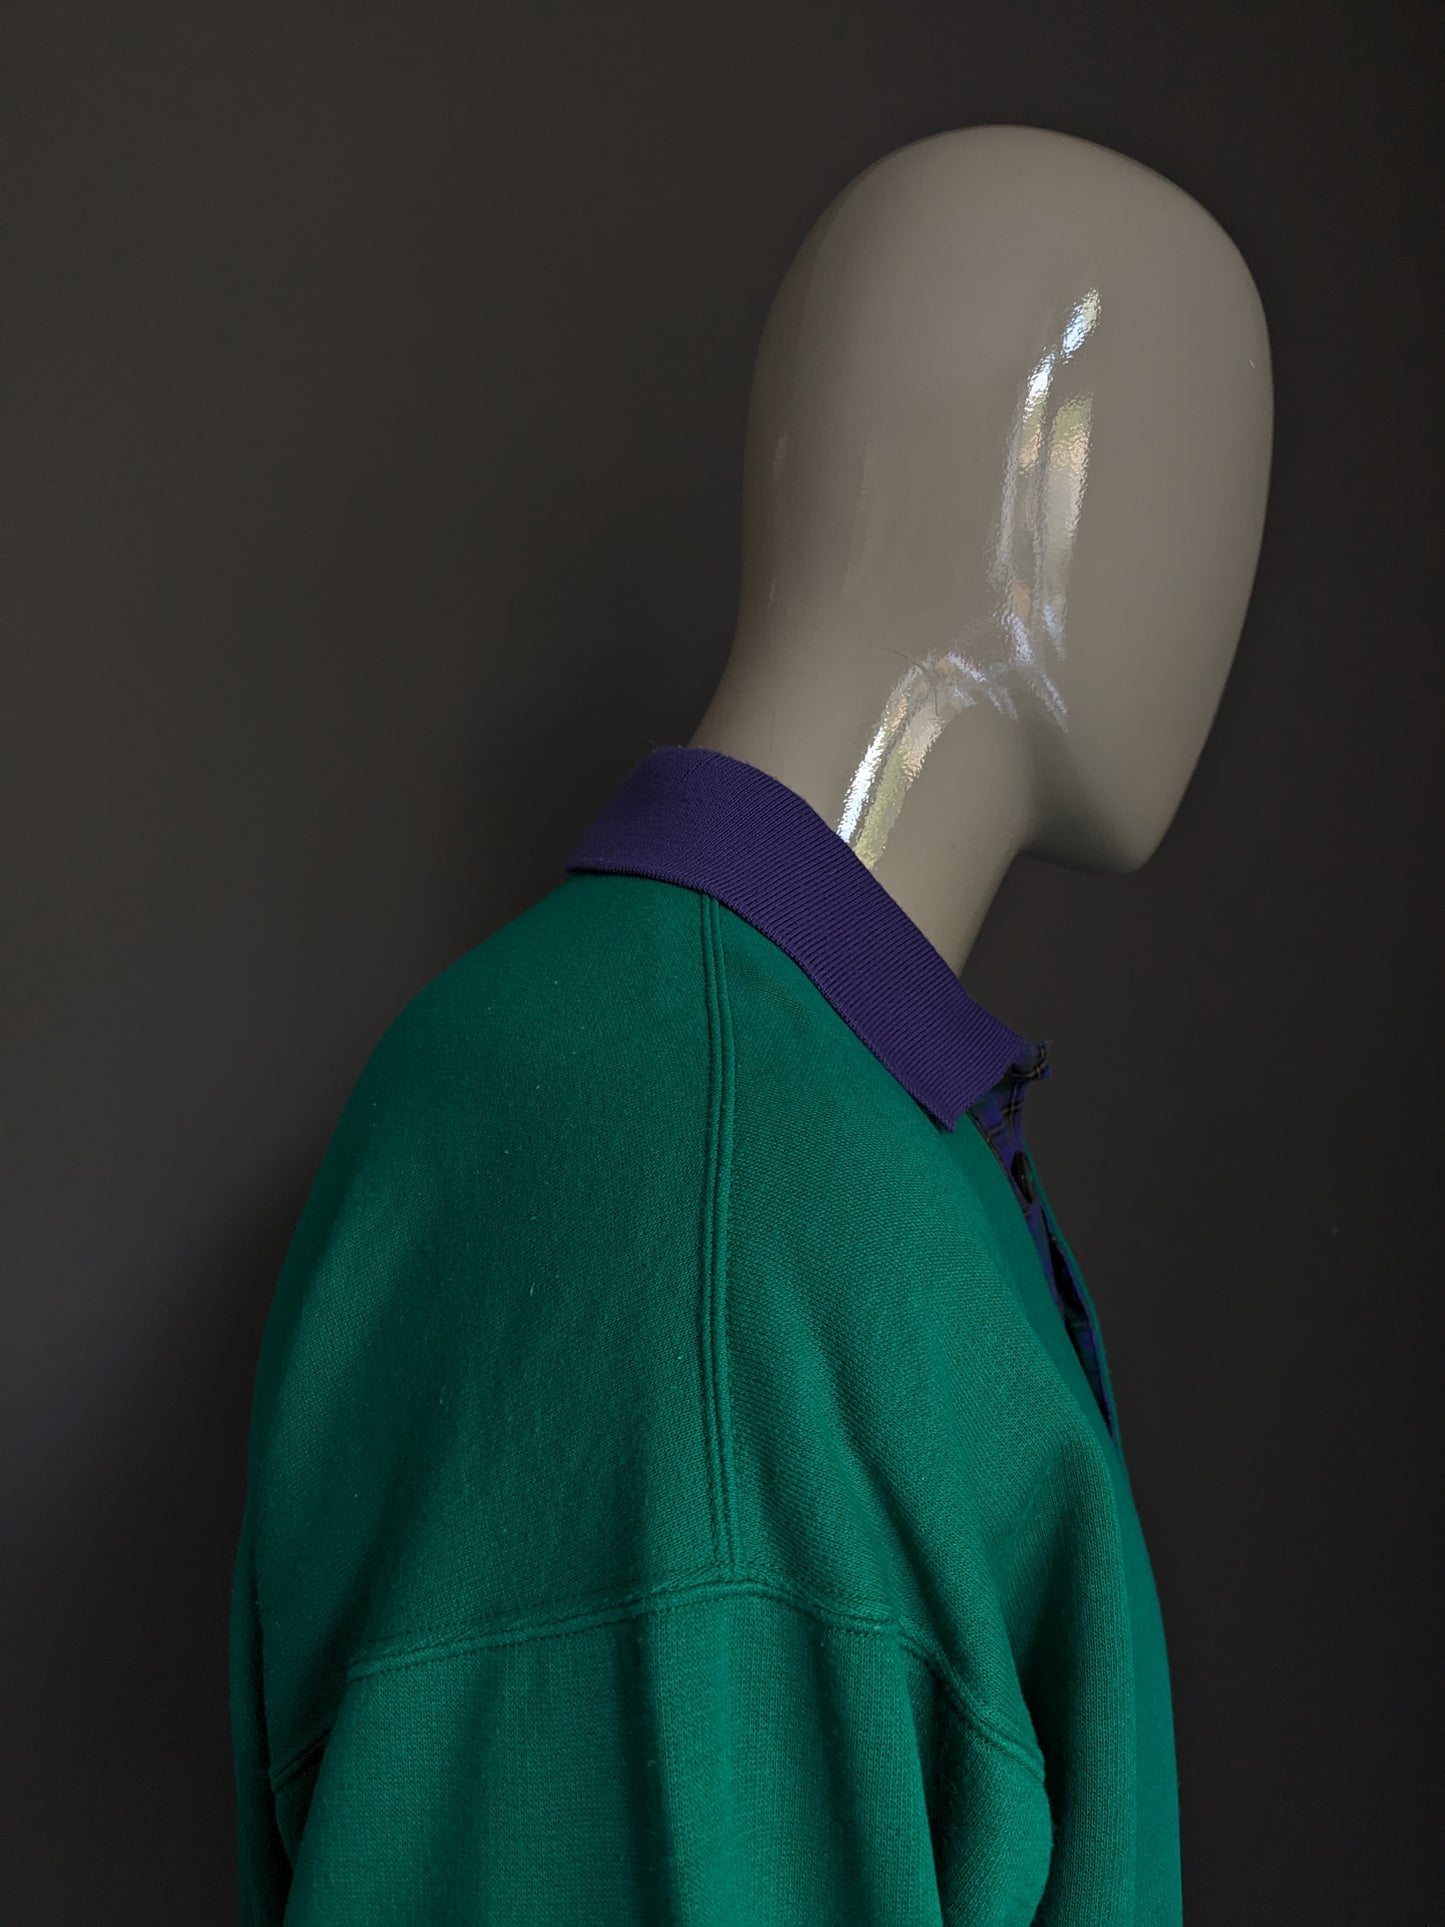 Suéter de polo Sergio Sergio Vintage con banda elástica. Color púrpura verde de color. Tamaño xl.